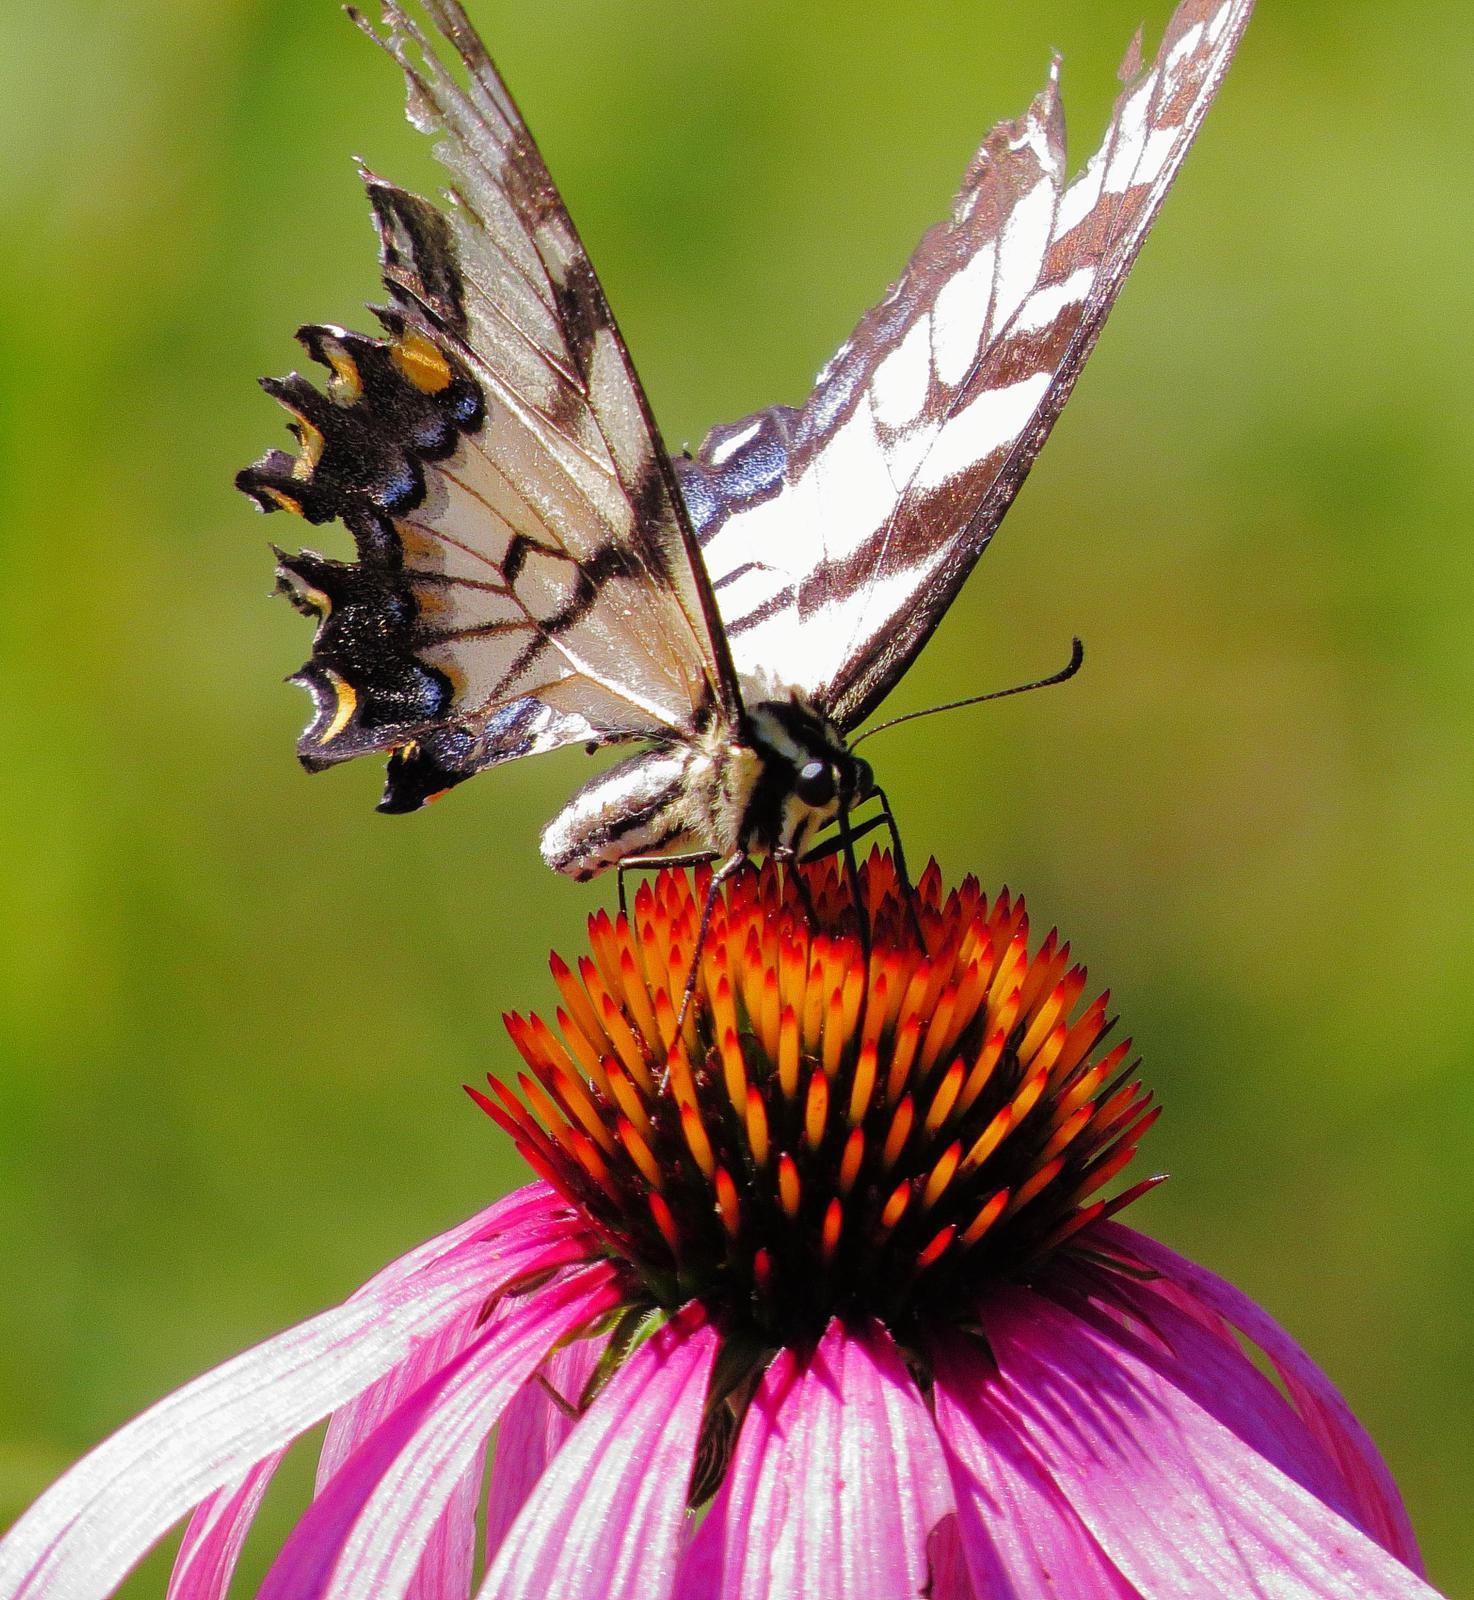 Eastern Tiger Swallowtail Photo by Kent Jensen